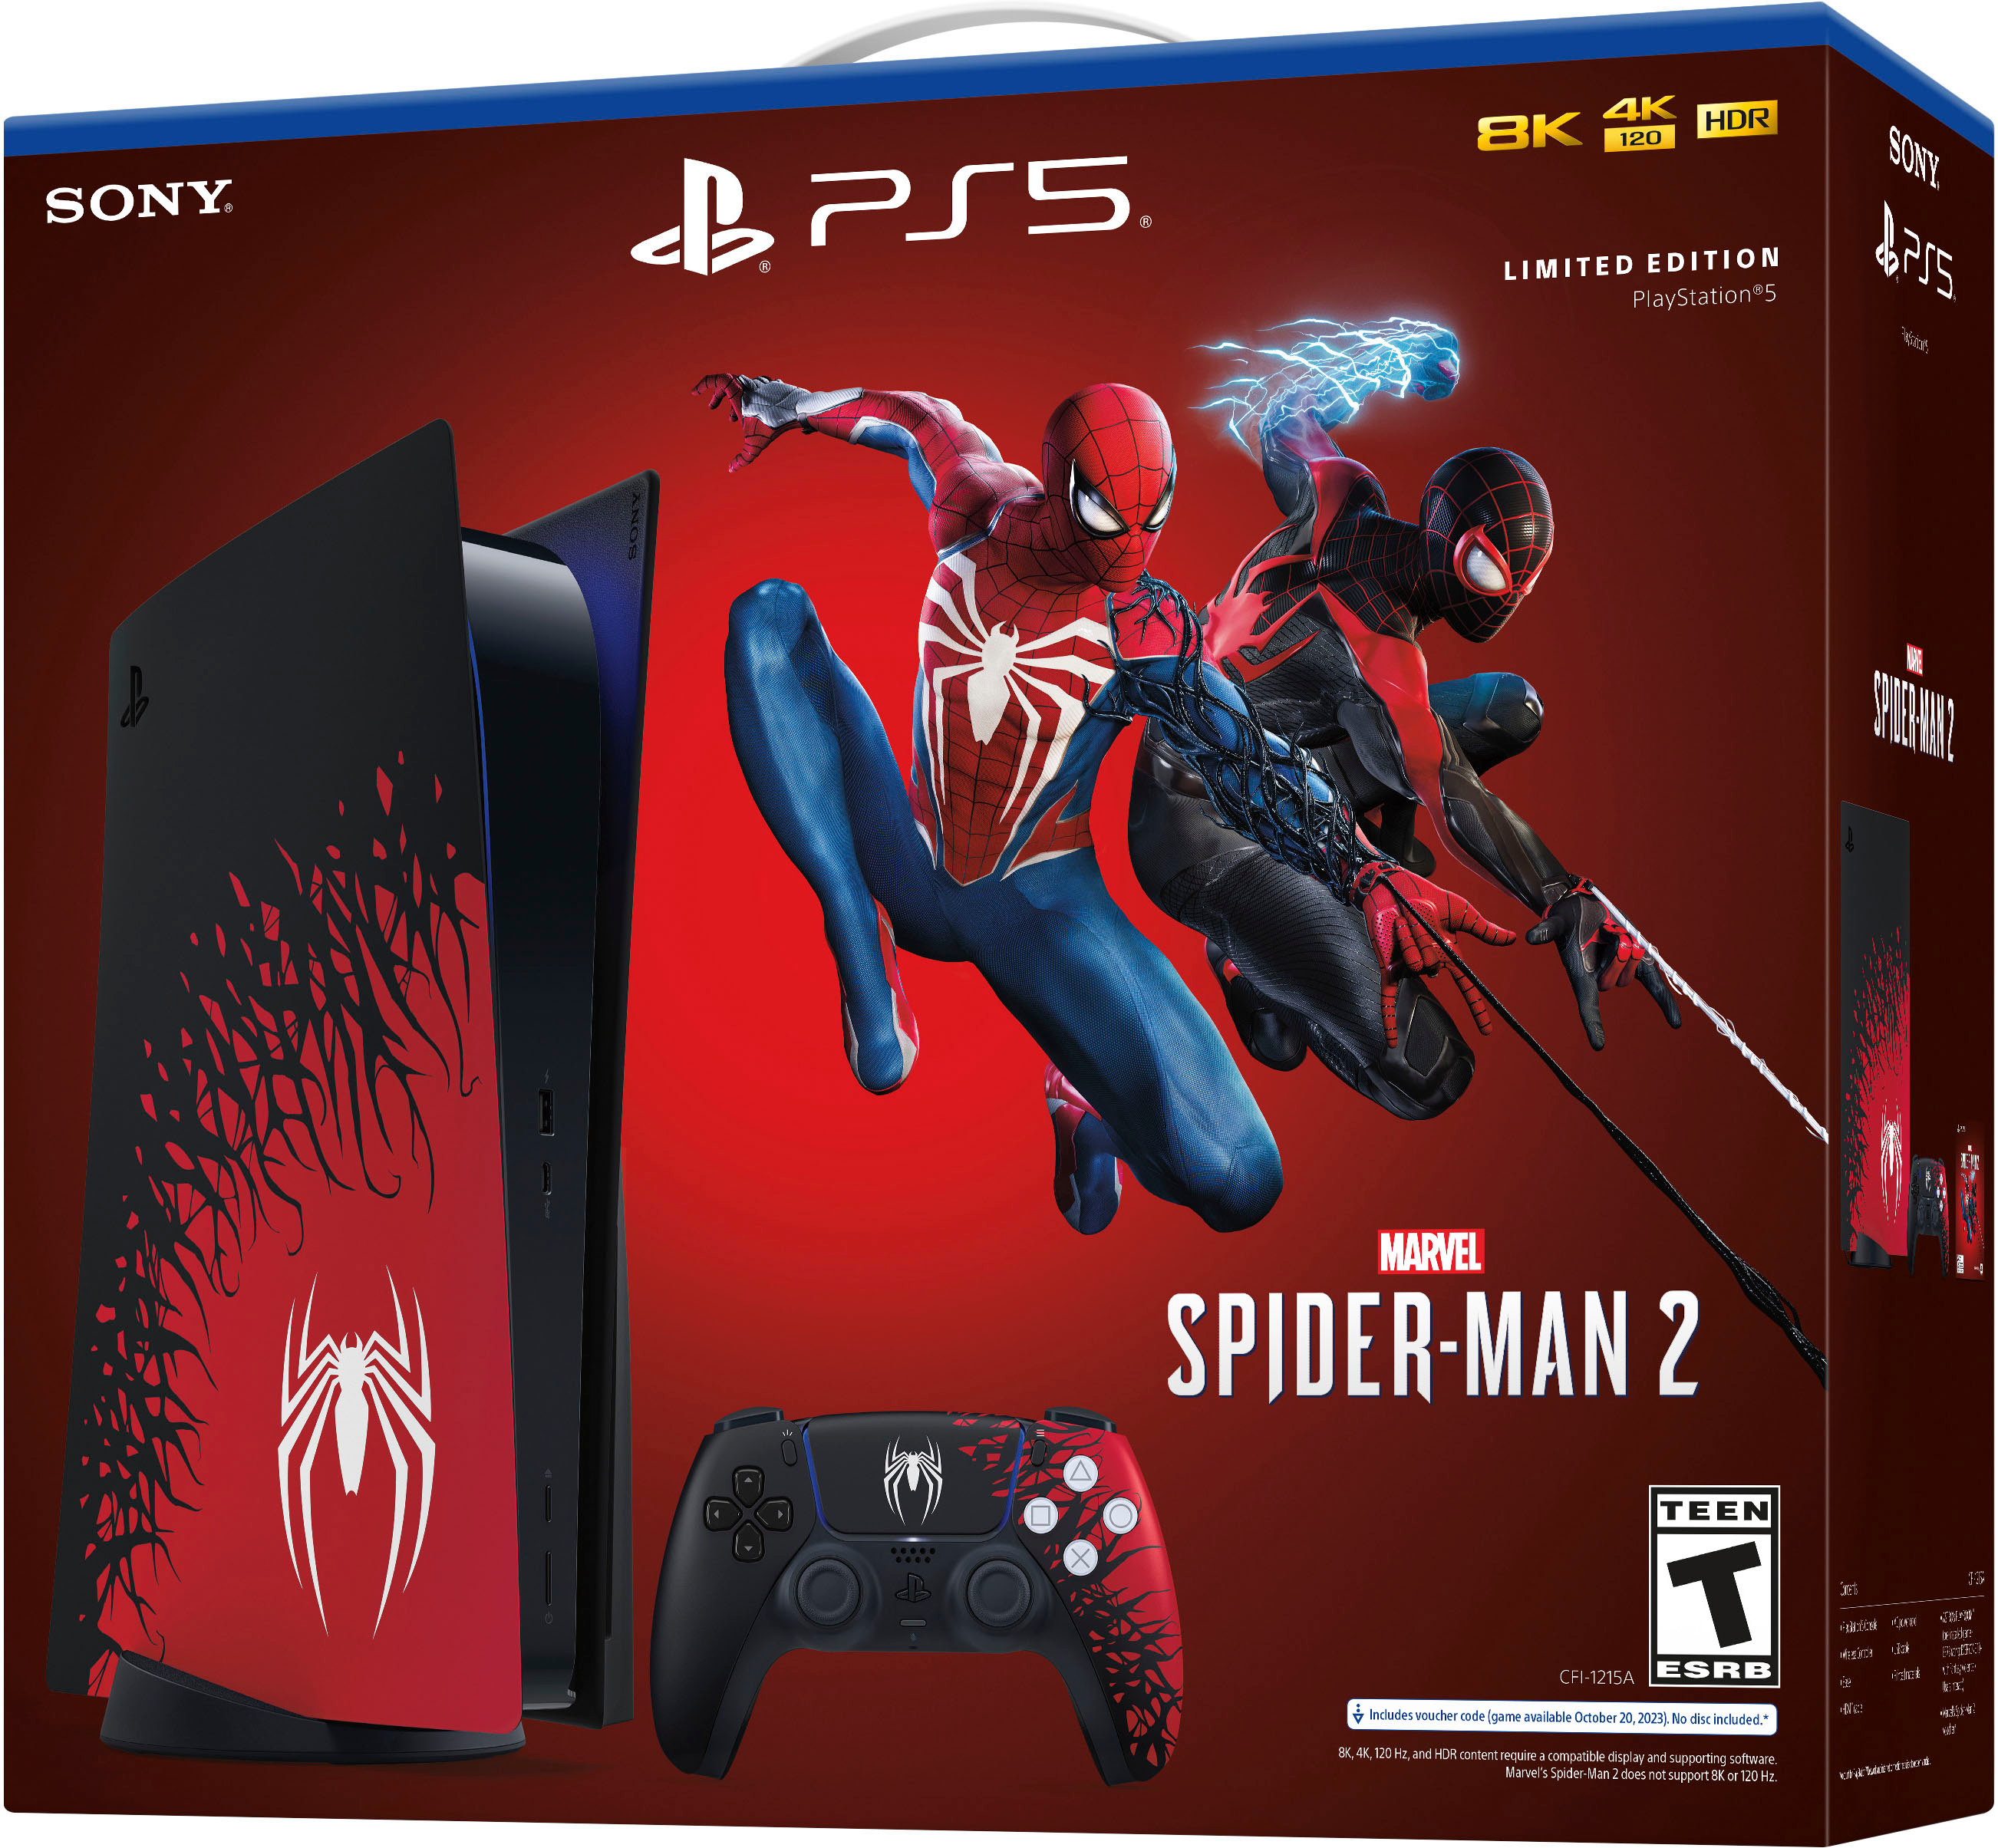 Marvel's Spider-Man 2 ya ha vendido 5 millones de copias en PS5